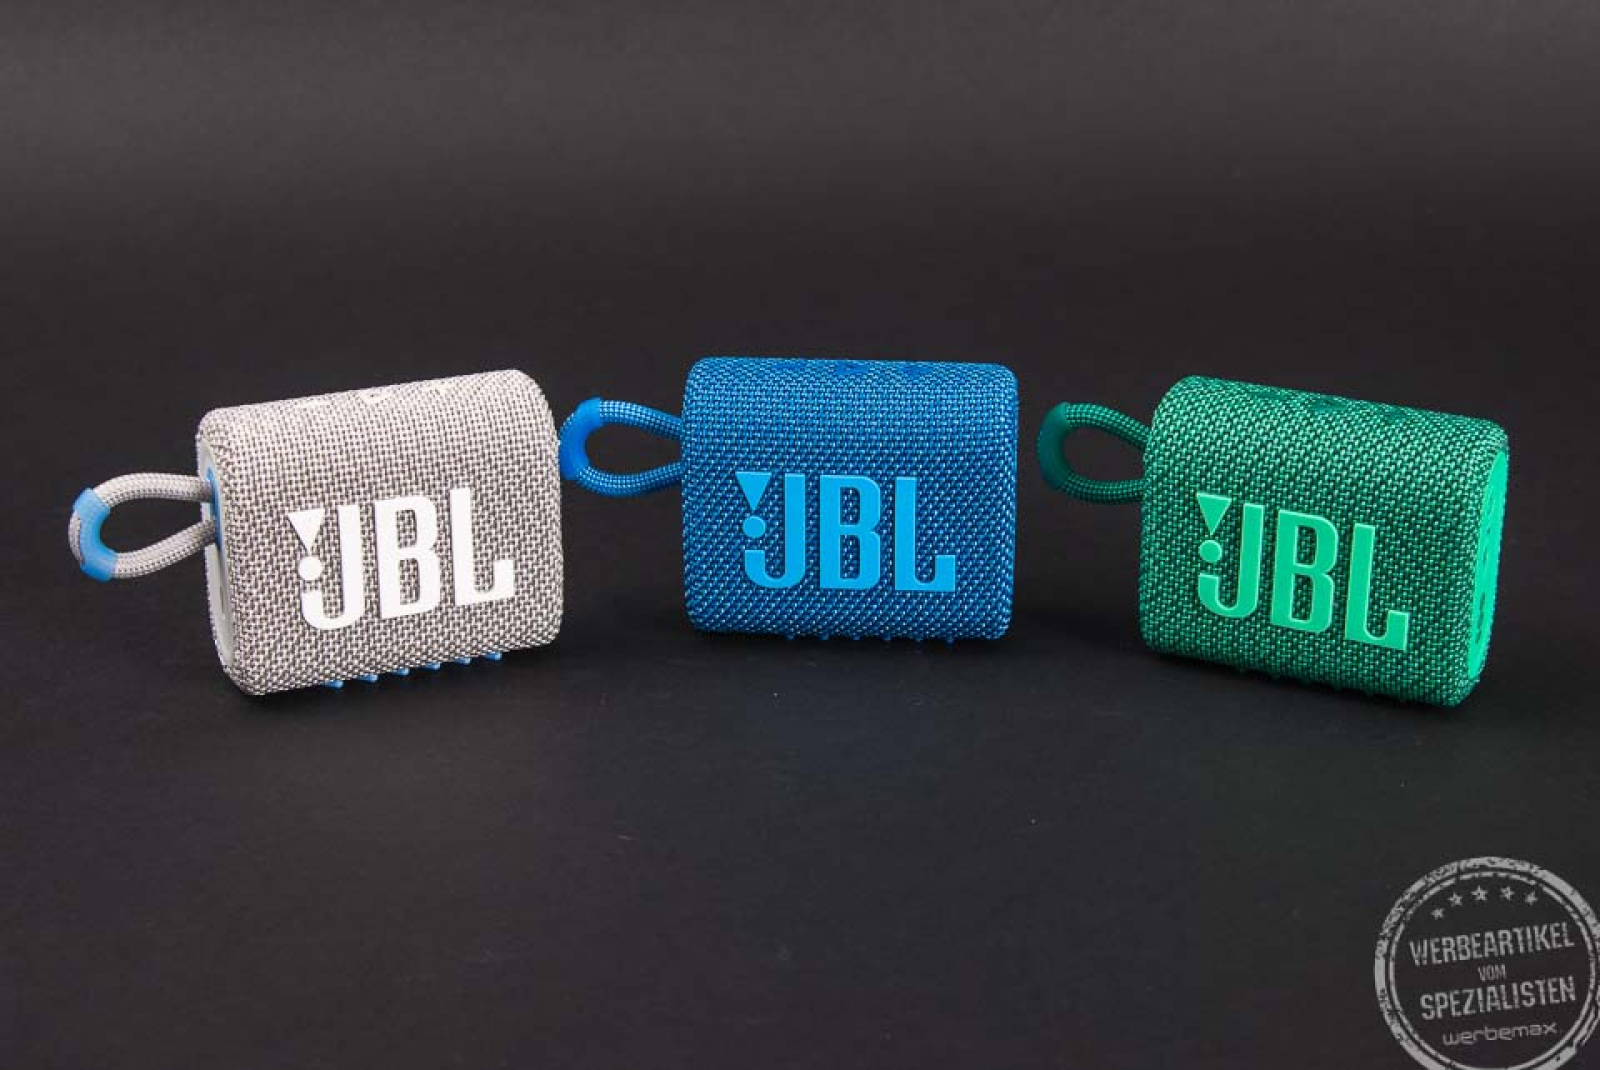 JBL Lautsprecher in grau, blau und grün als Werbeartikel